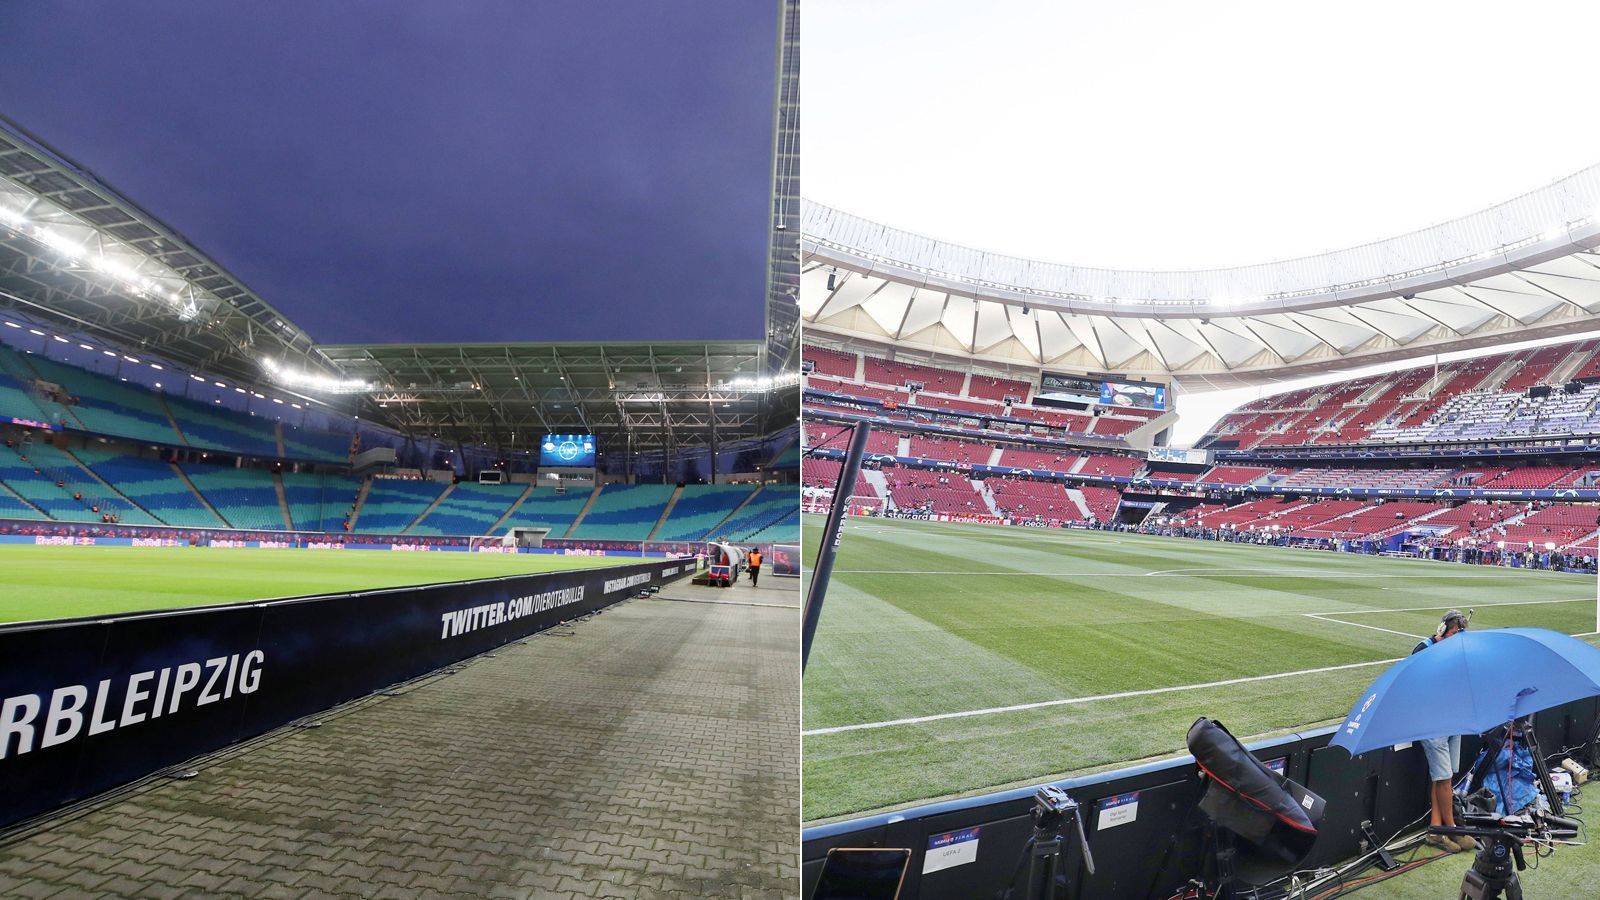 
                <strong>Stadion (Kapazität)</strong><br>
                Die Leipziger tragen ihre Heimspiele in der Red Bull Arena (li.) aus. Das Stadion, welches für die WM 2006 errichtet wurde, fasst derzeit 42.146 Zuschauer. Bis ins Jahr 2022 wird die Red Bull Arena in verschiedenen Bereichen um- und ausgebaut. Alleine für die erste Bauphase sollen 60 Millionen Euro an Kosten angefallen sein. Atletico Madrid spielt hingegen seit drei Jahren im neuen "Schmuckkästchen" namens Wanda Metropolitano (re.). Die 2017 eröffnete Arena fasst rund 68.500 Zuschauer. Medienberichten zufolge soll die aktuelle Atletico-Heimstätte etwa 310 Millionen Euro gekostet haben. Von 1966 bis 2017 war das Vicente Calderon die Heimat von Atletico - in diese Arena passten gut 15.000 weniger Fans. 
              